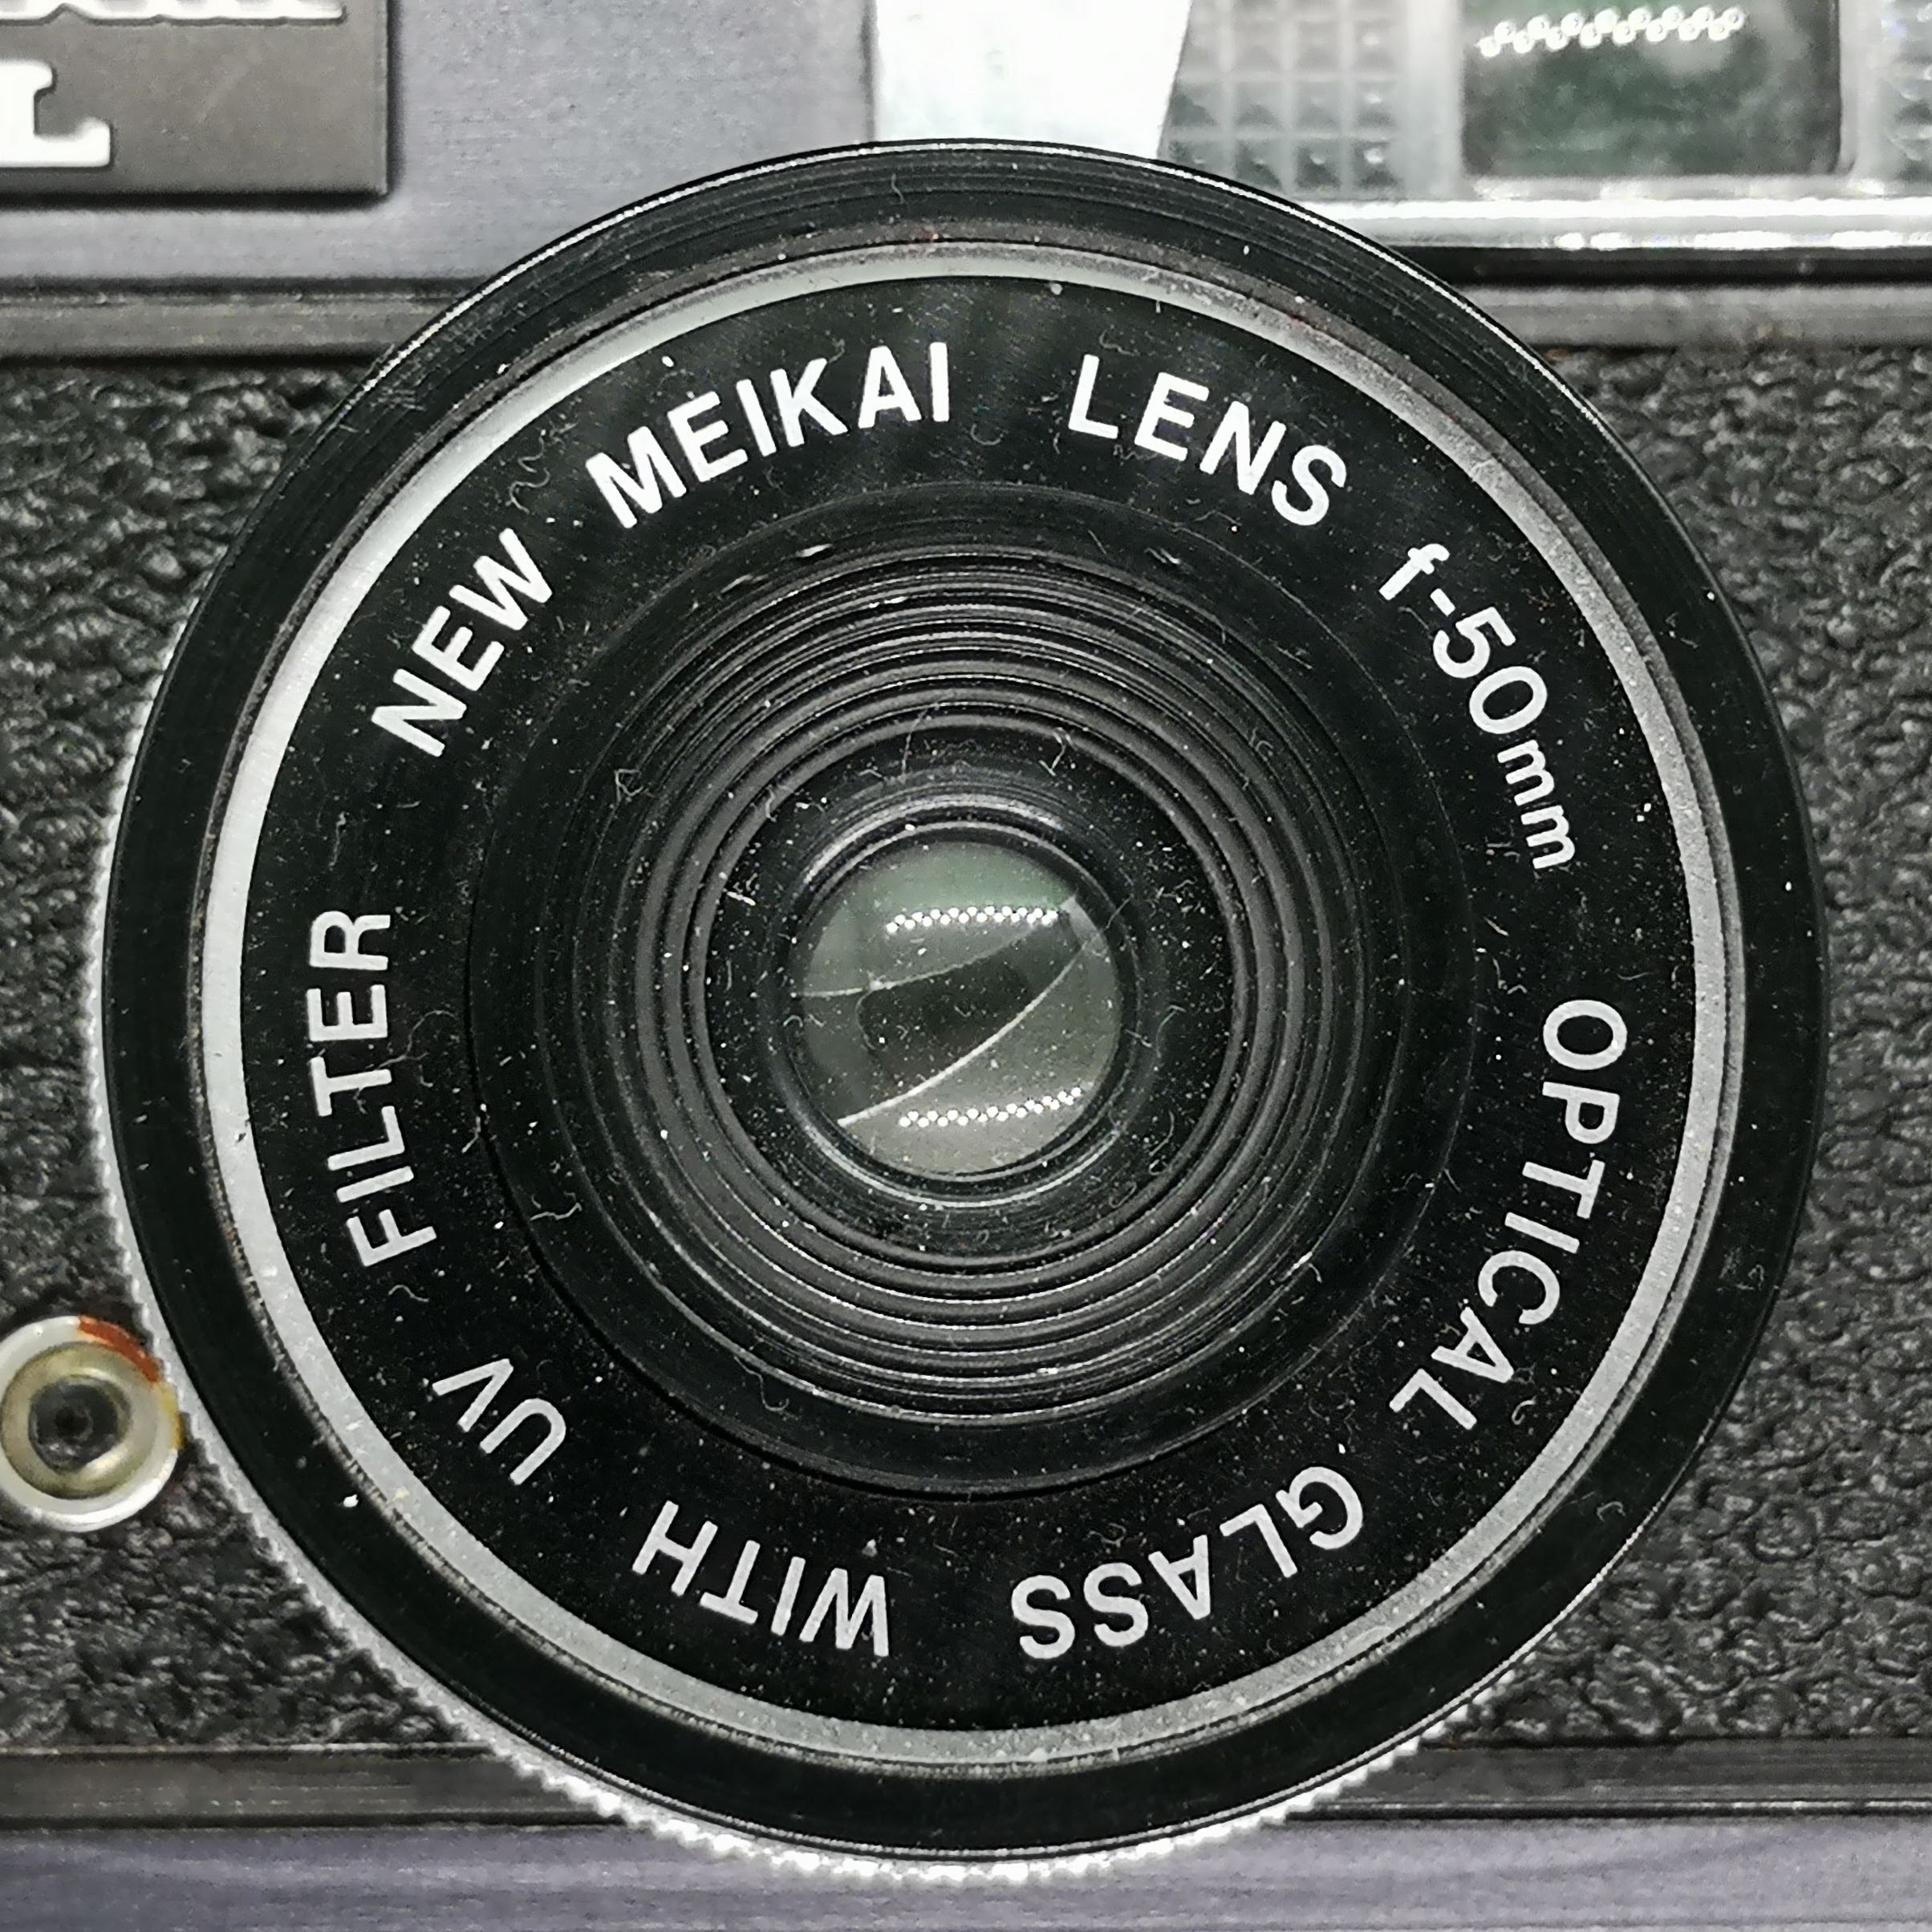 Meikai SL lens close up